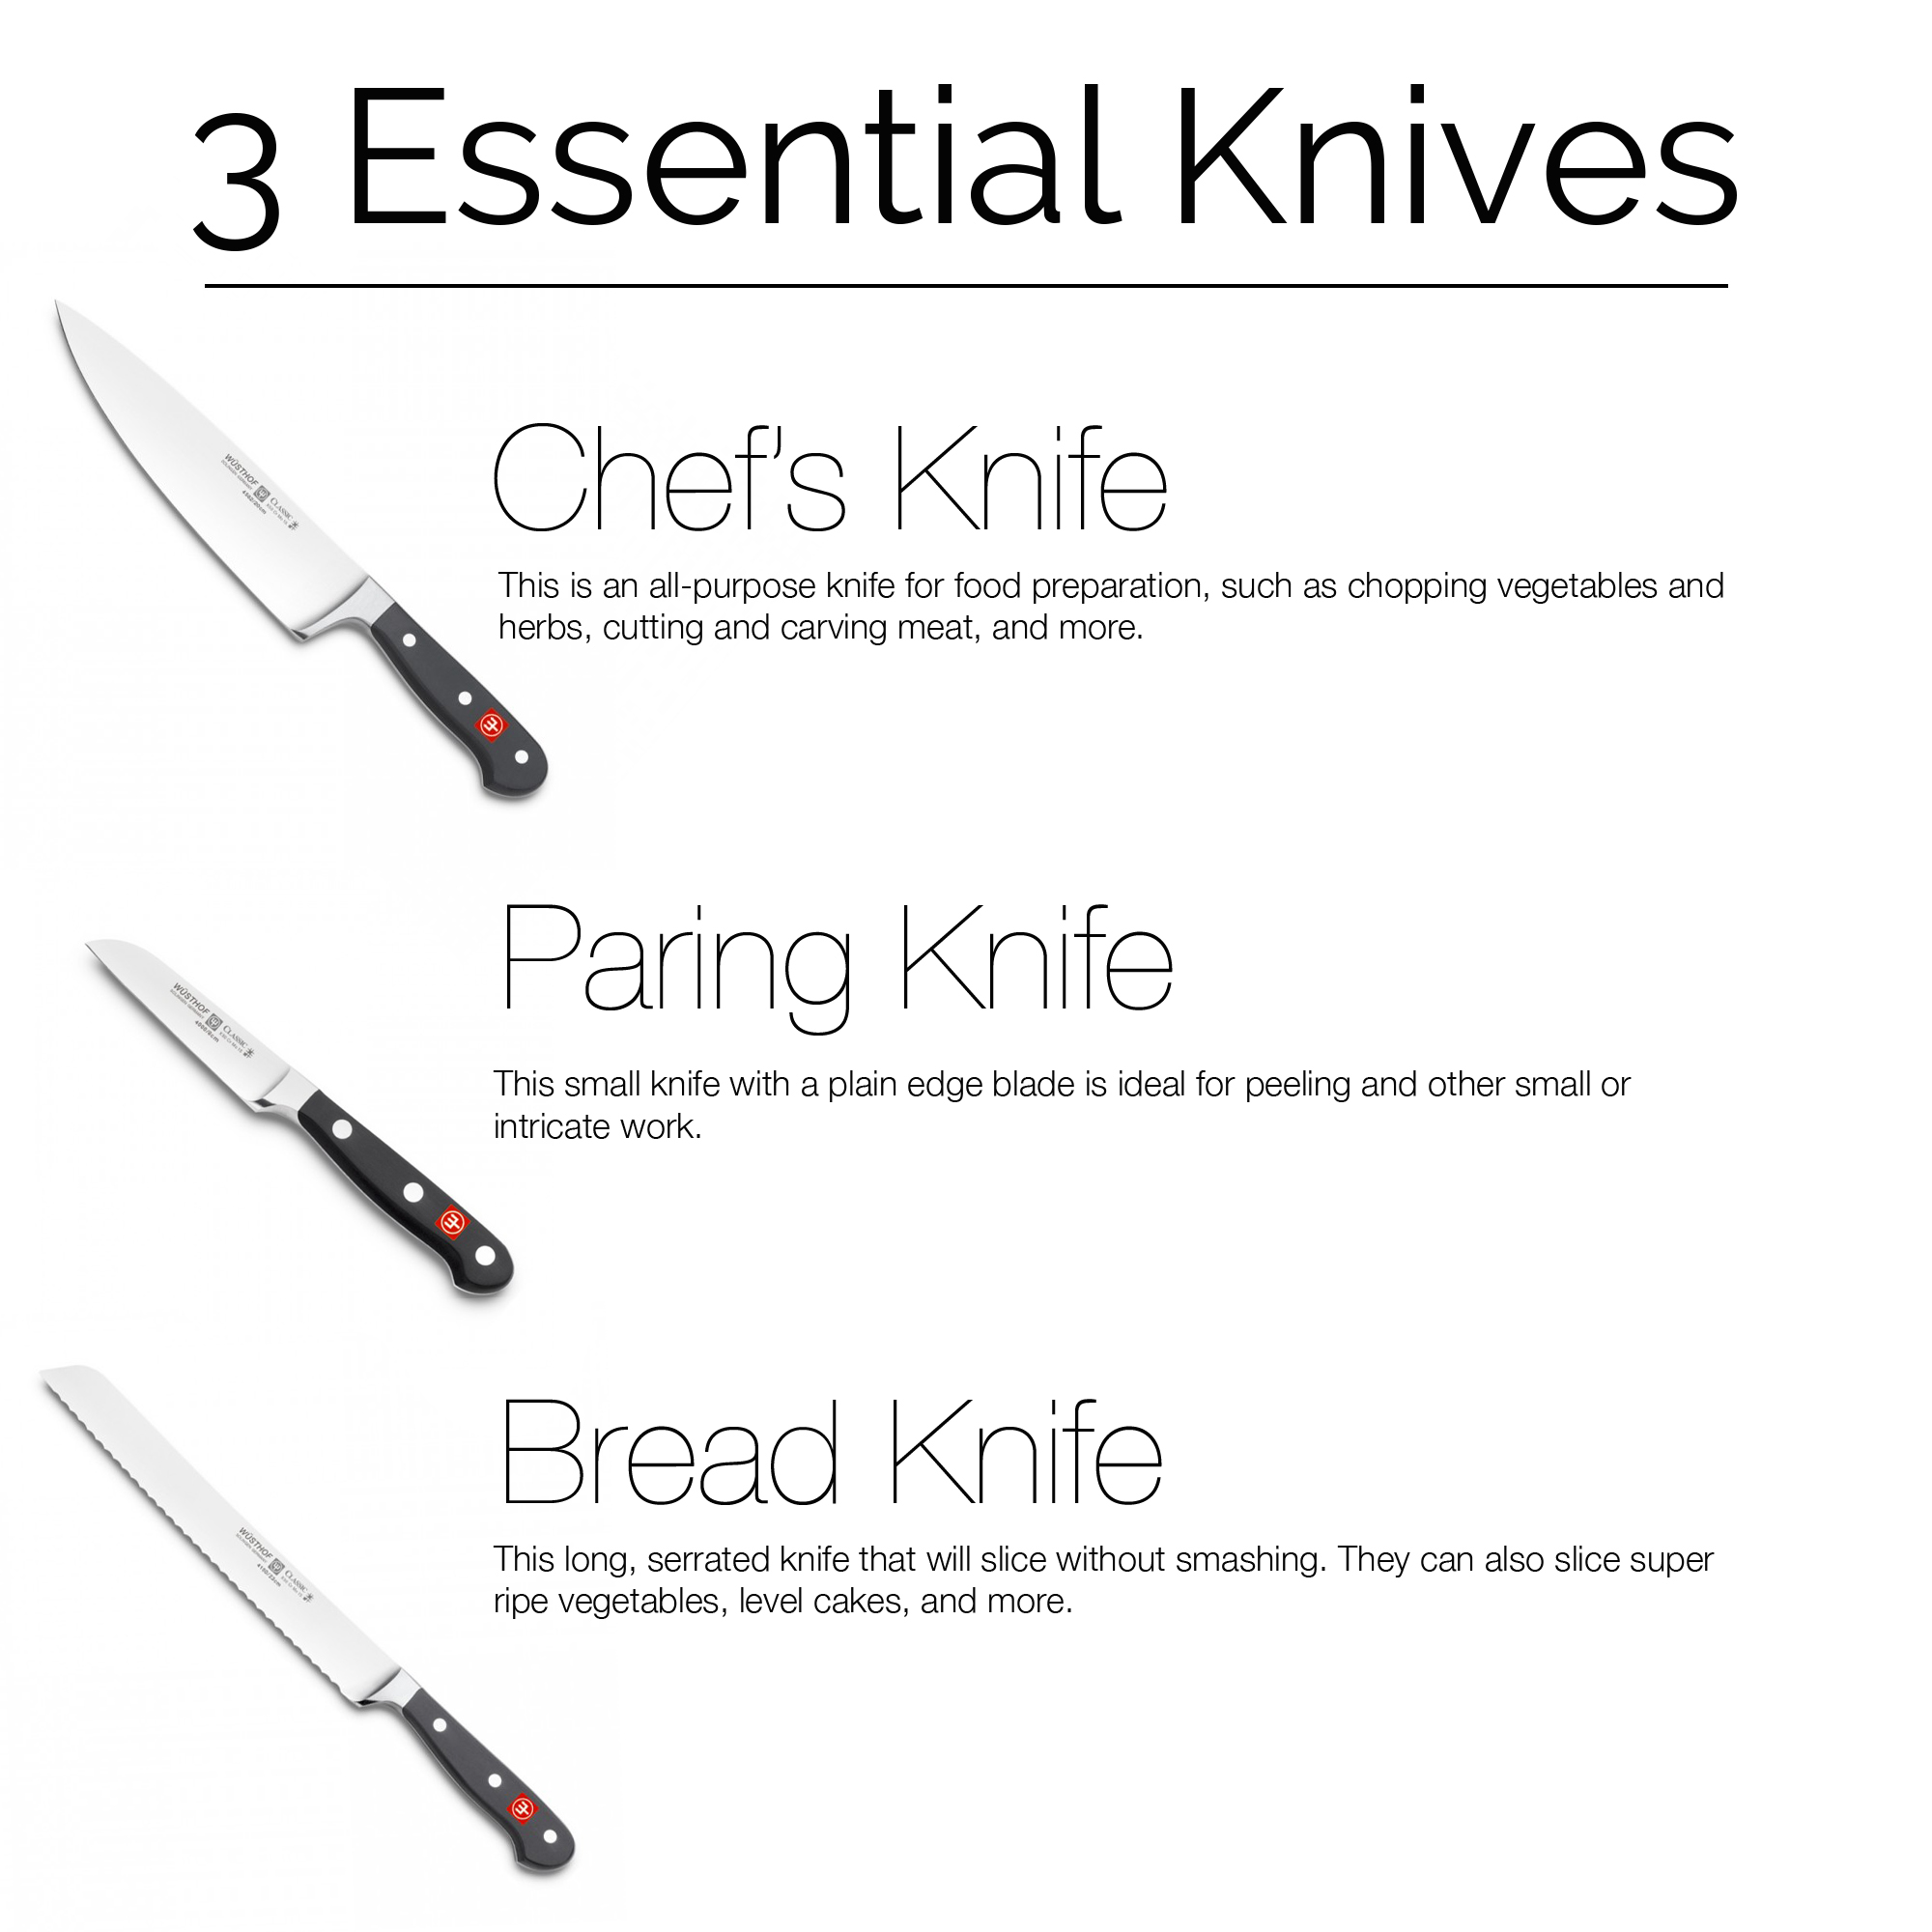 3 Tips for Caring for Wüsthof Knives